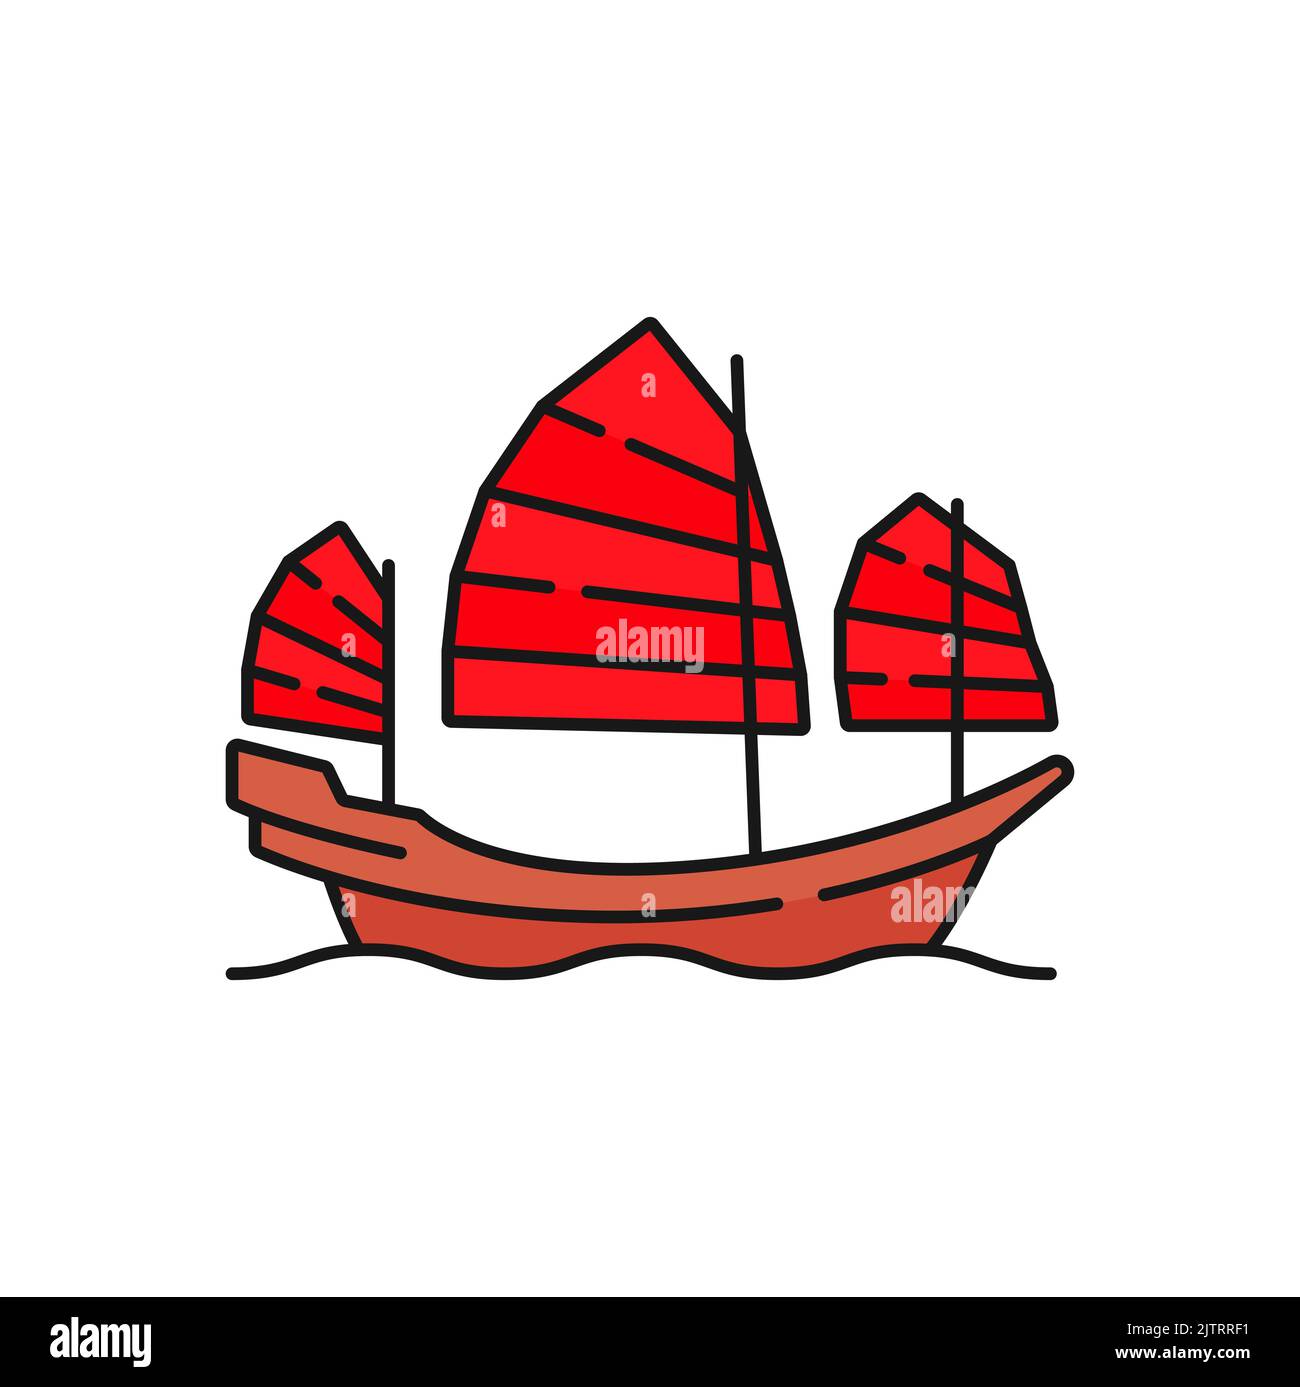 Bateau de voyage à Hong Kong avec toile rouge, icône représentant un bateau. Vector transport voilier, ancienne navigation chinoise et bateau de croisière, hk touriste trans Illustration de Vecteur